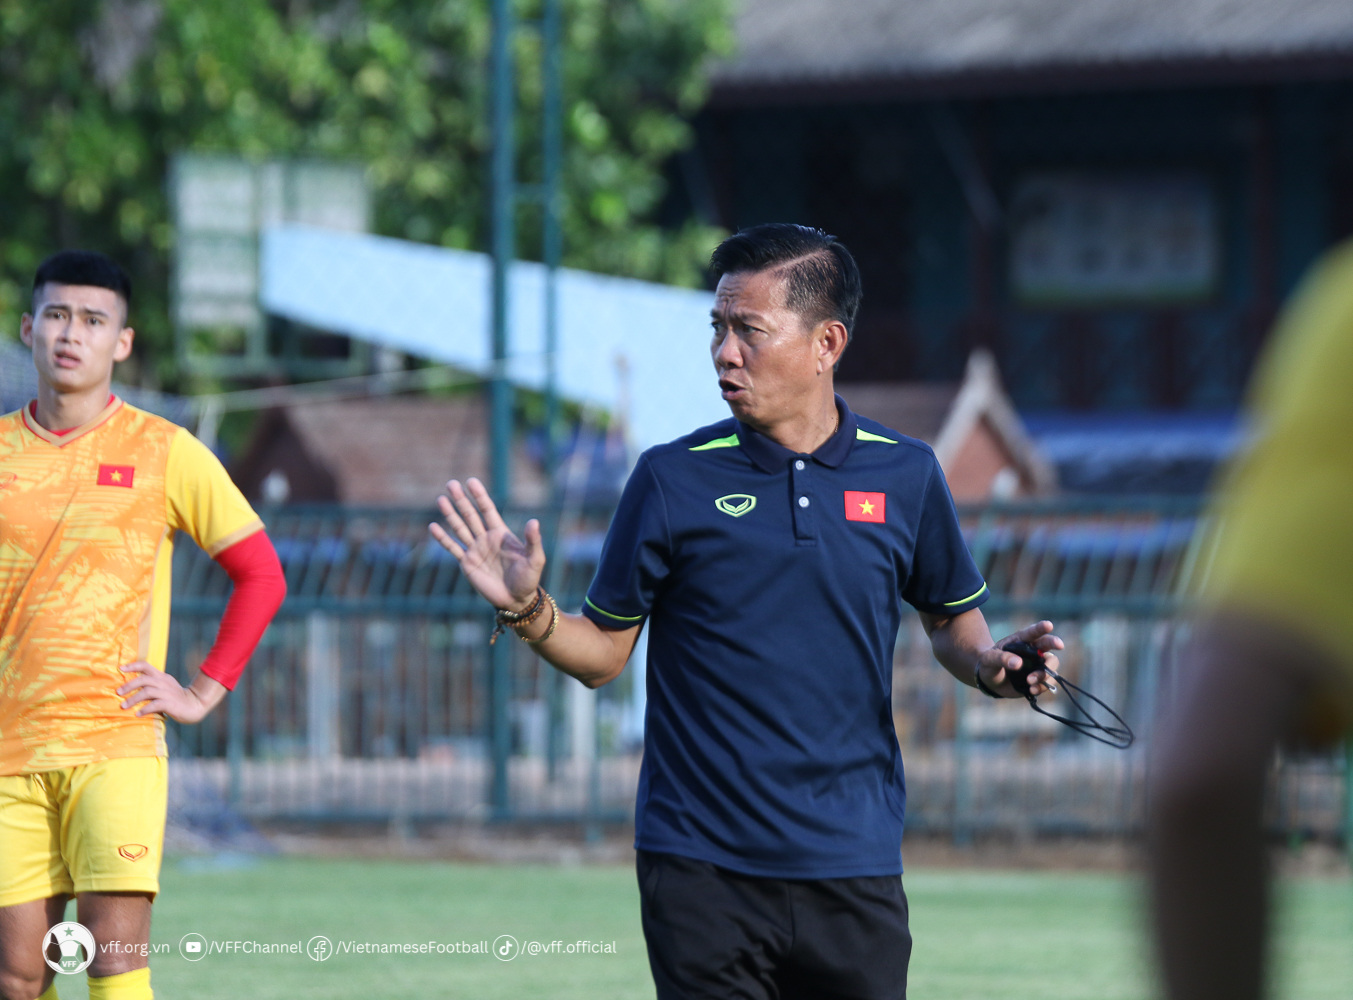 Đây được xem là cuộc “tổng duyệt” của U23 Việt Nam cả về nhân sự lẫn lối chơi, chuẩn bị cho trận ra quân tại giải vô địch U23 Đông Nam Á 2023.